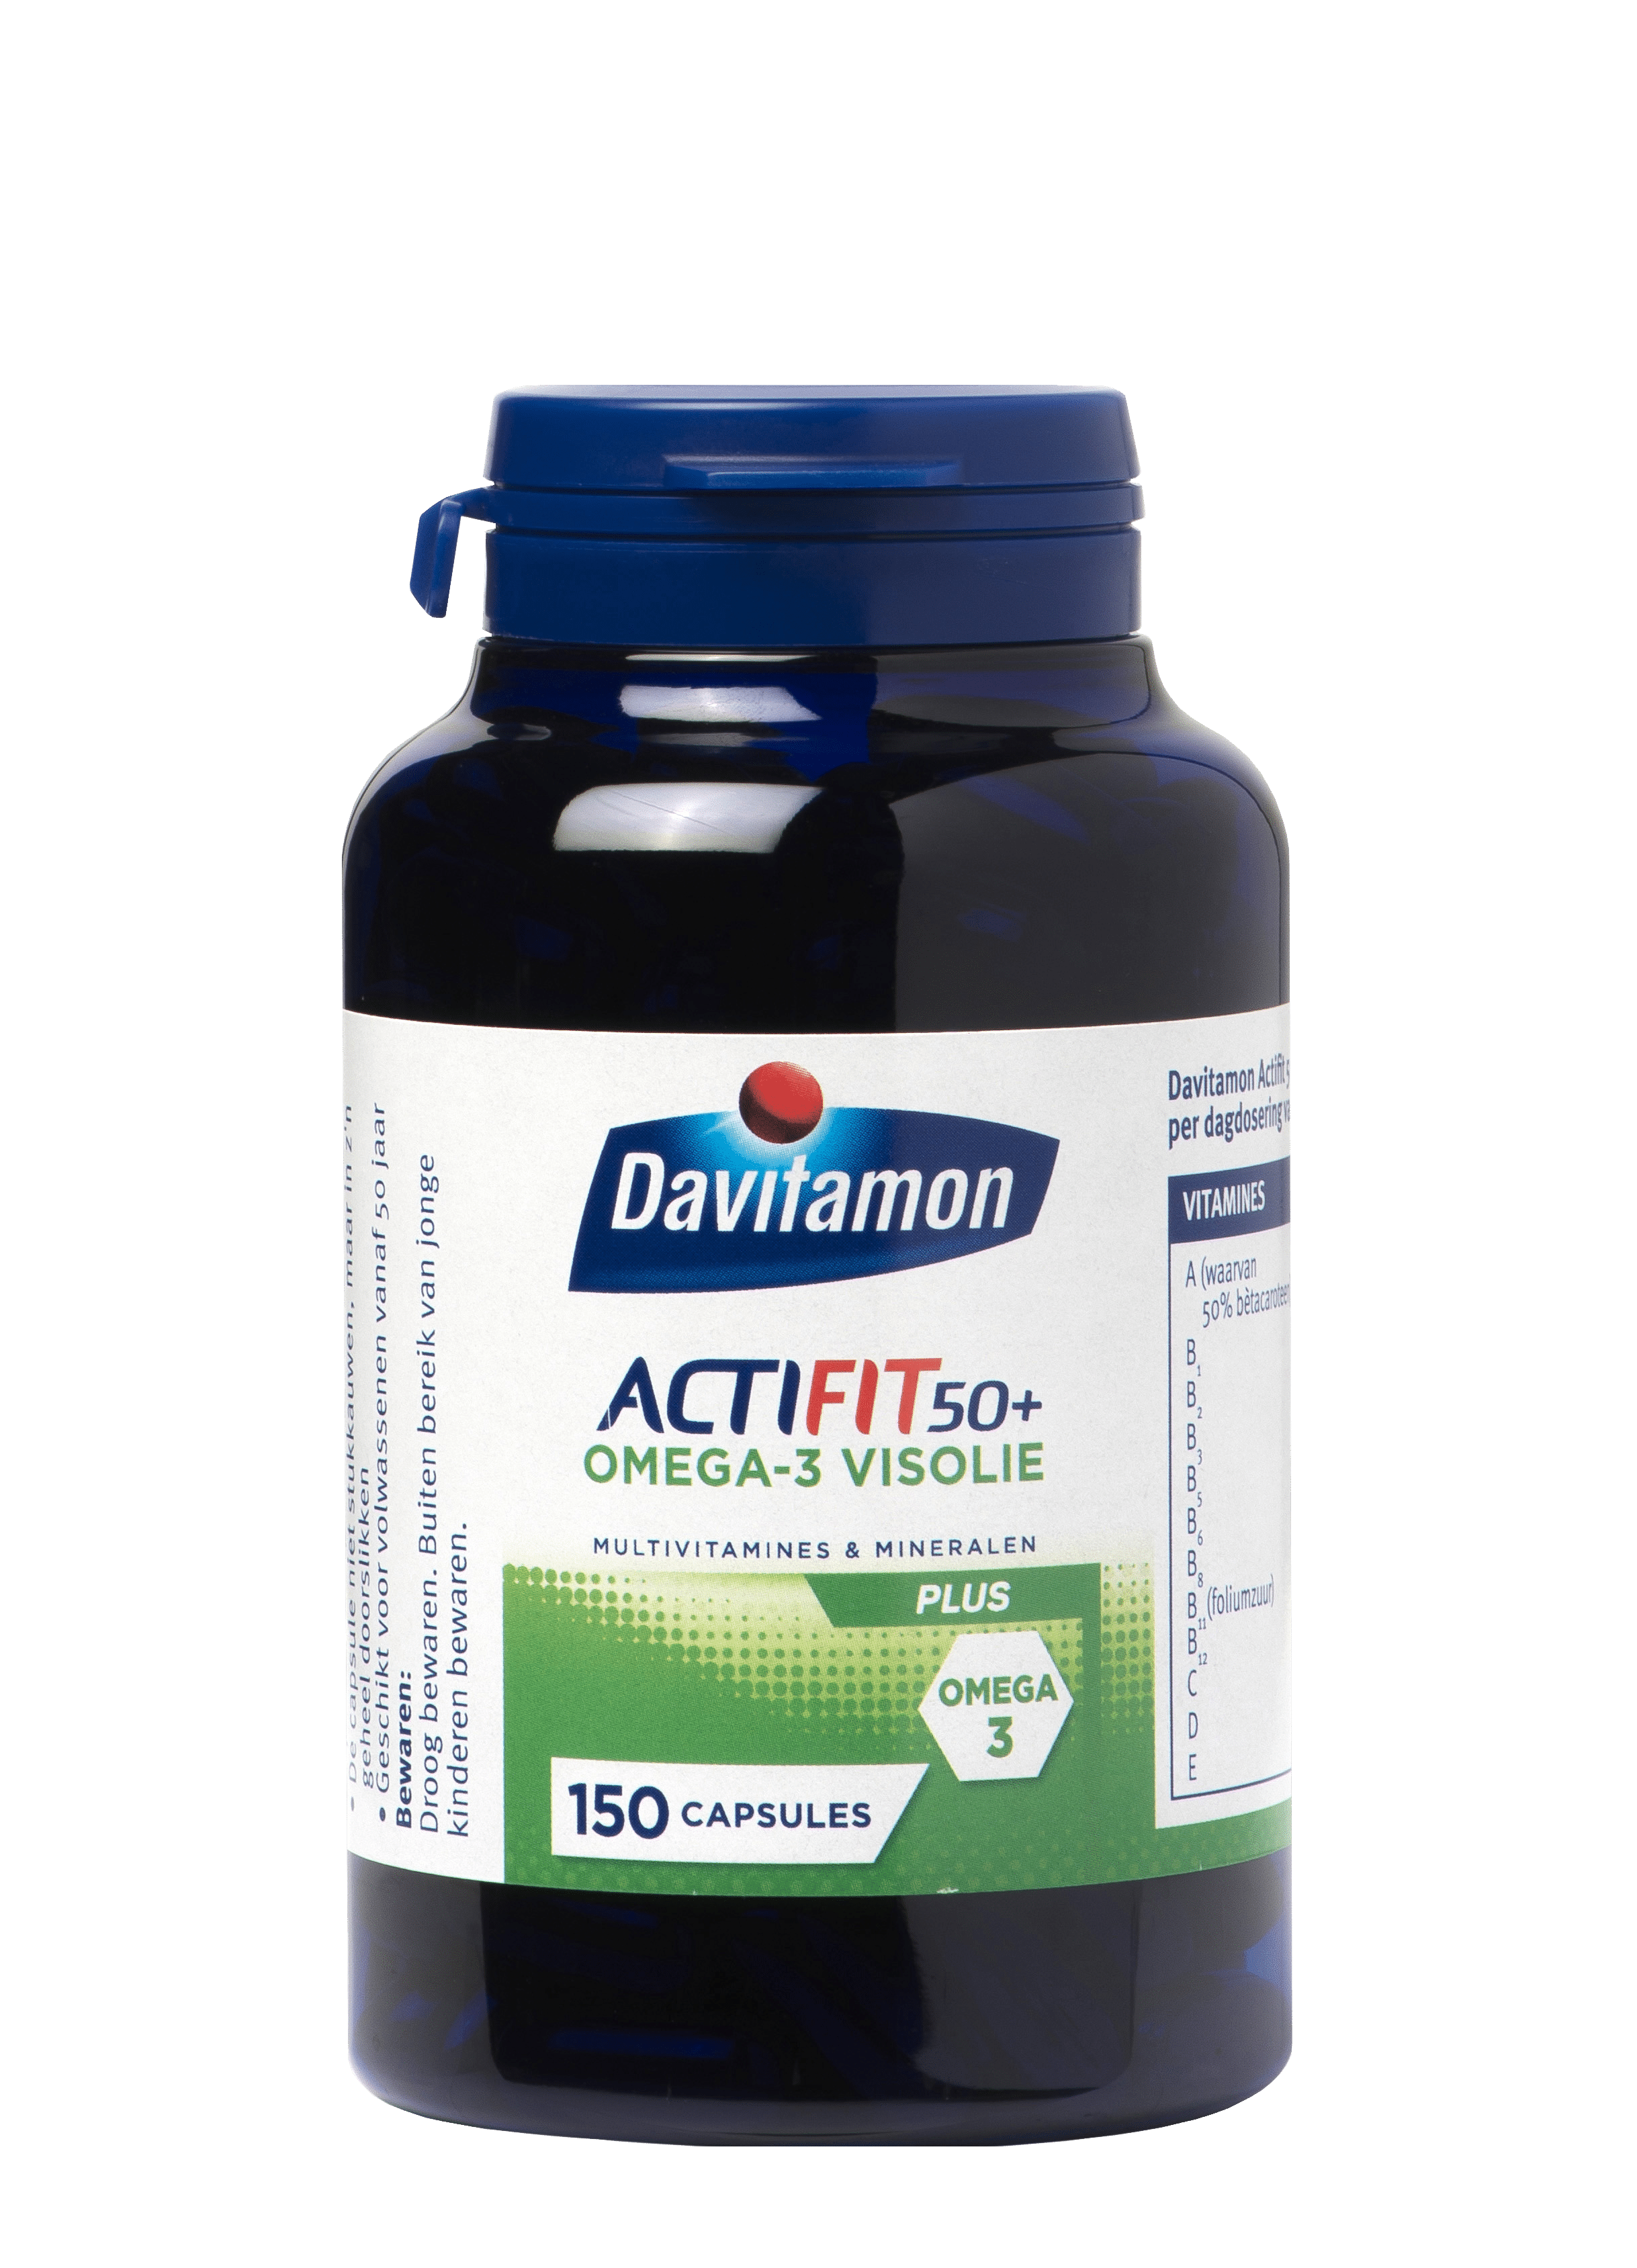 Davitamon Actifit Visolie Voordeel Capsules Product